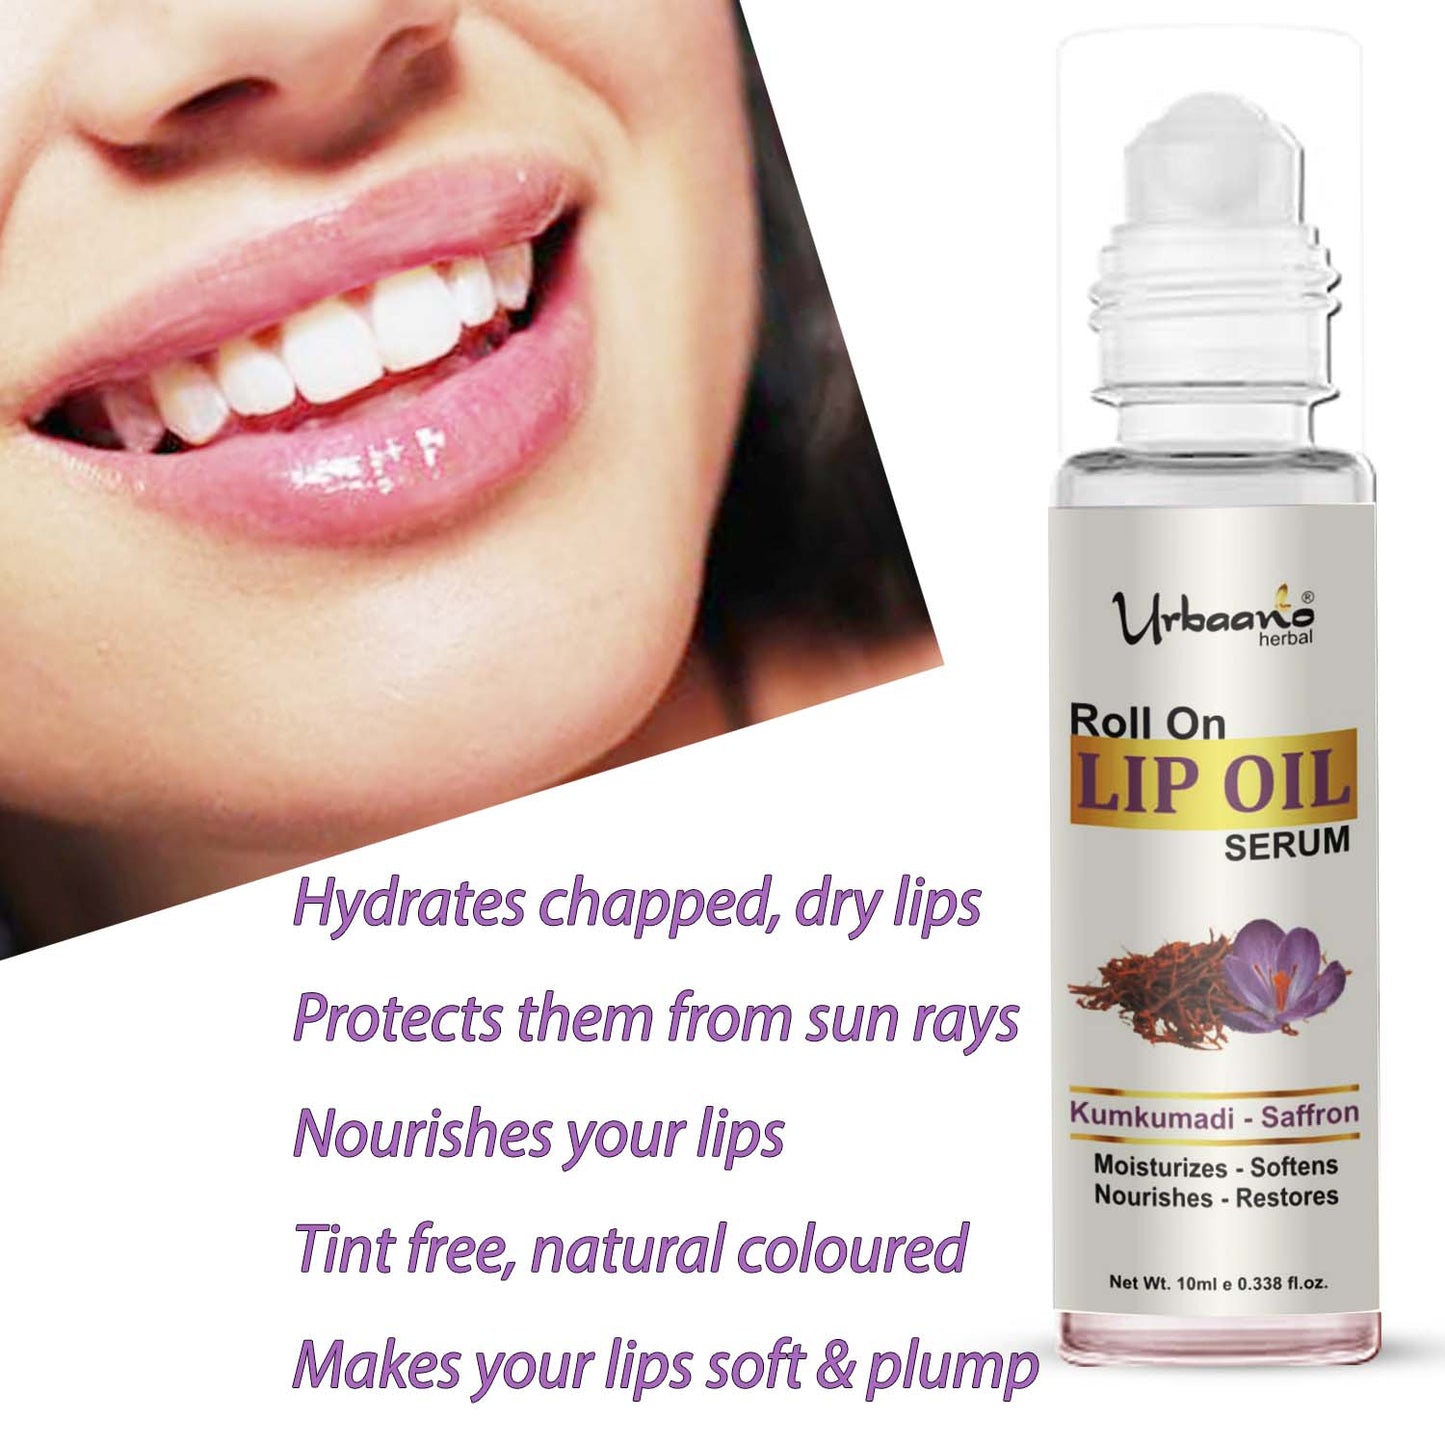 urbaano herbal kumkumadi lip oil serum for soft, hydrated,smooth lips